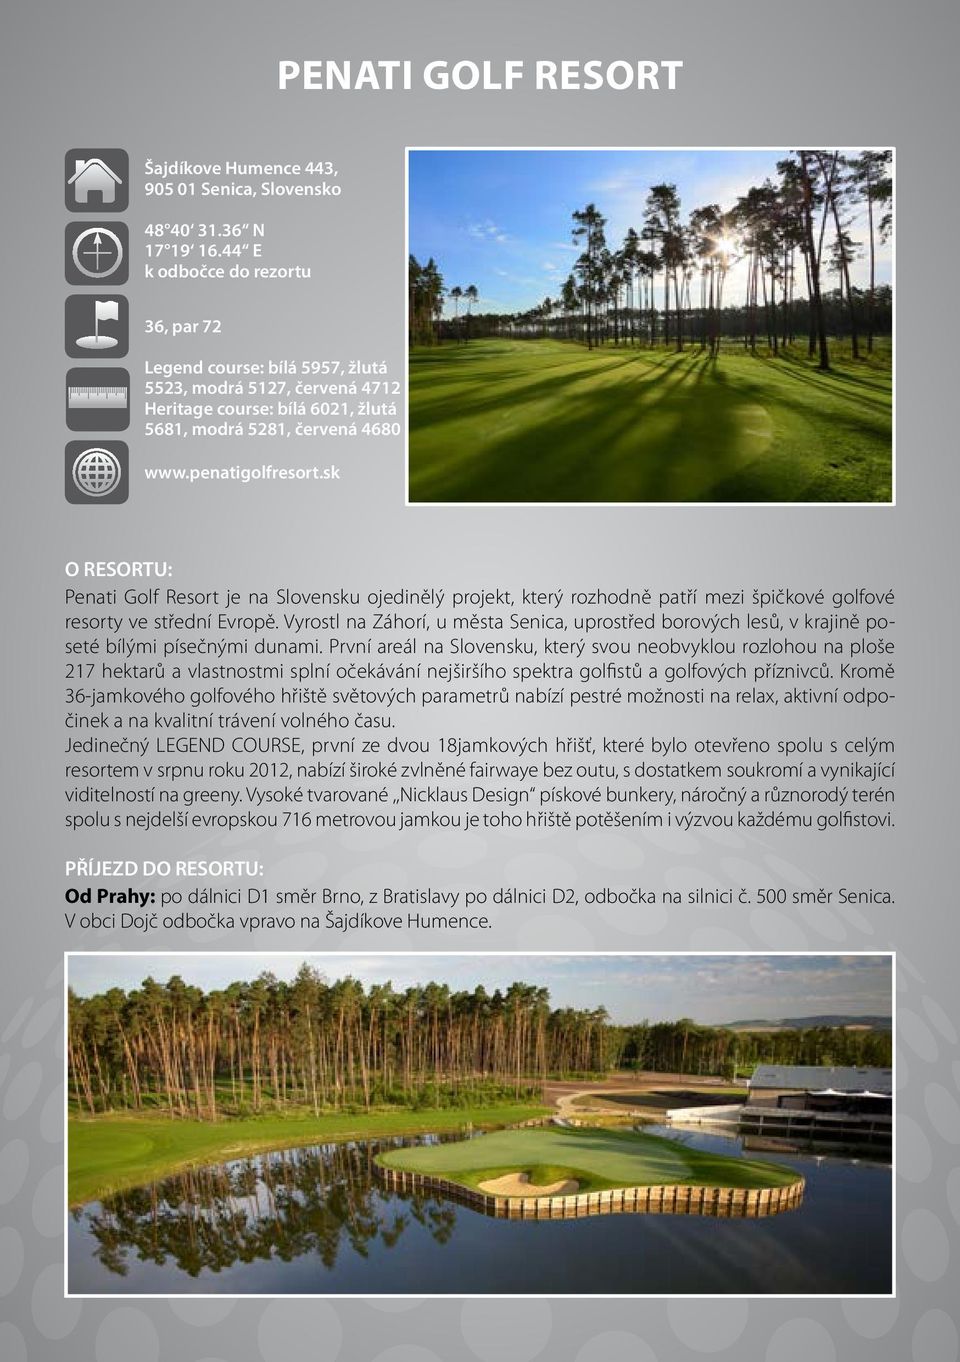 sk O RESORTU: Penati Golf Resort je na Slovensku ojedinělý projekt, který rozhodně patří mezi špičkové golfové resorty ve střední Evropě.